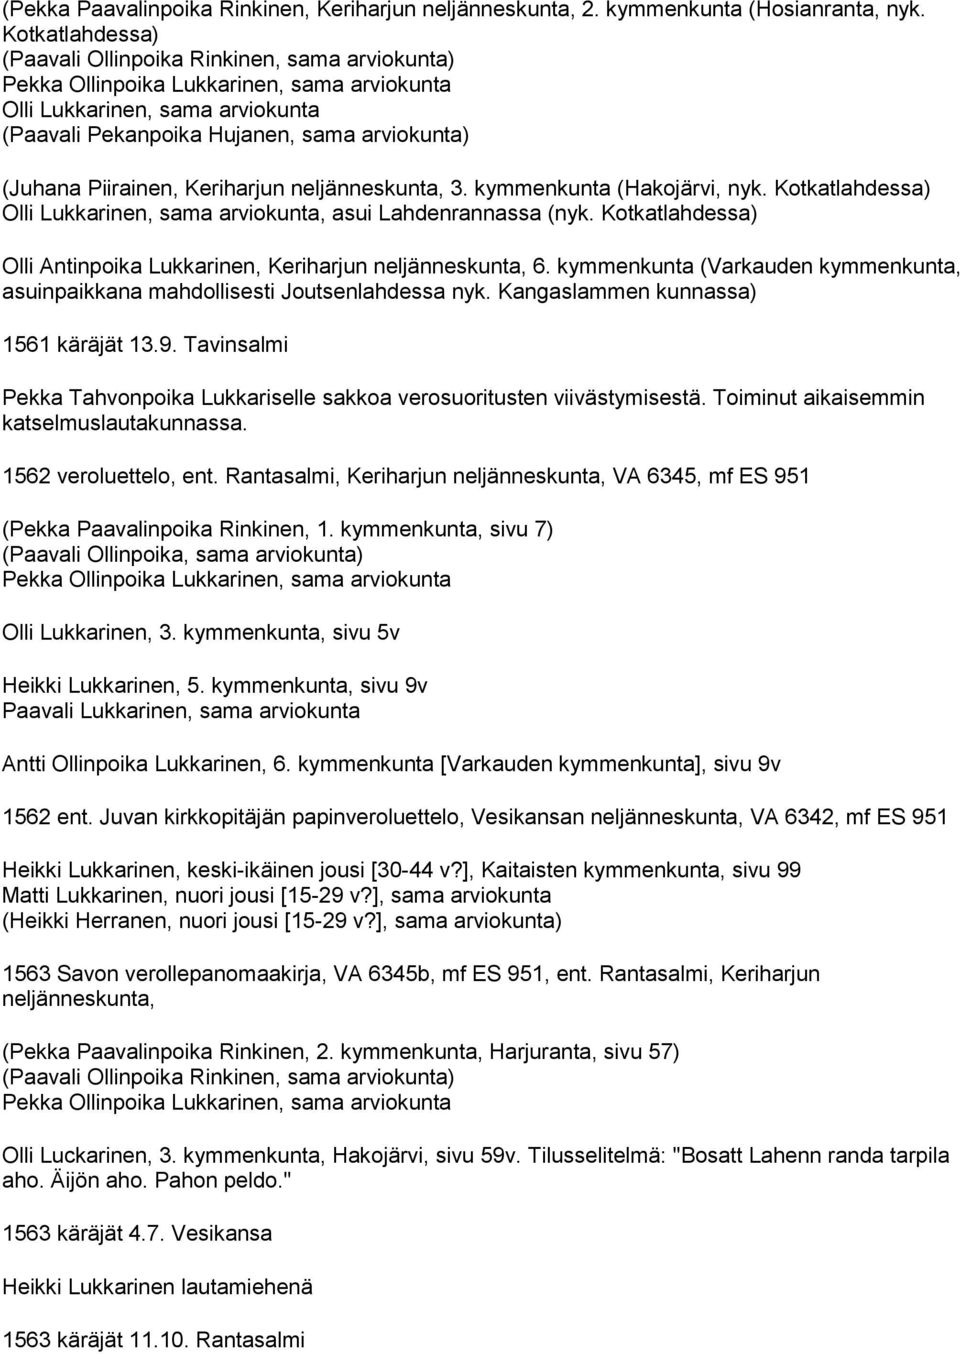 kymmenkunta (Hakojärvi, nyk. Kotkatlahdessa) Olli Lukkarinen, sama arviokunta, asui Lahdenrannassa (nyk. Kotkatlahdessa) Olli Antinpoika Lukkarinen, Keriharjun neljänneskunta, 6.